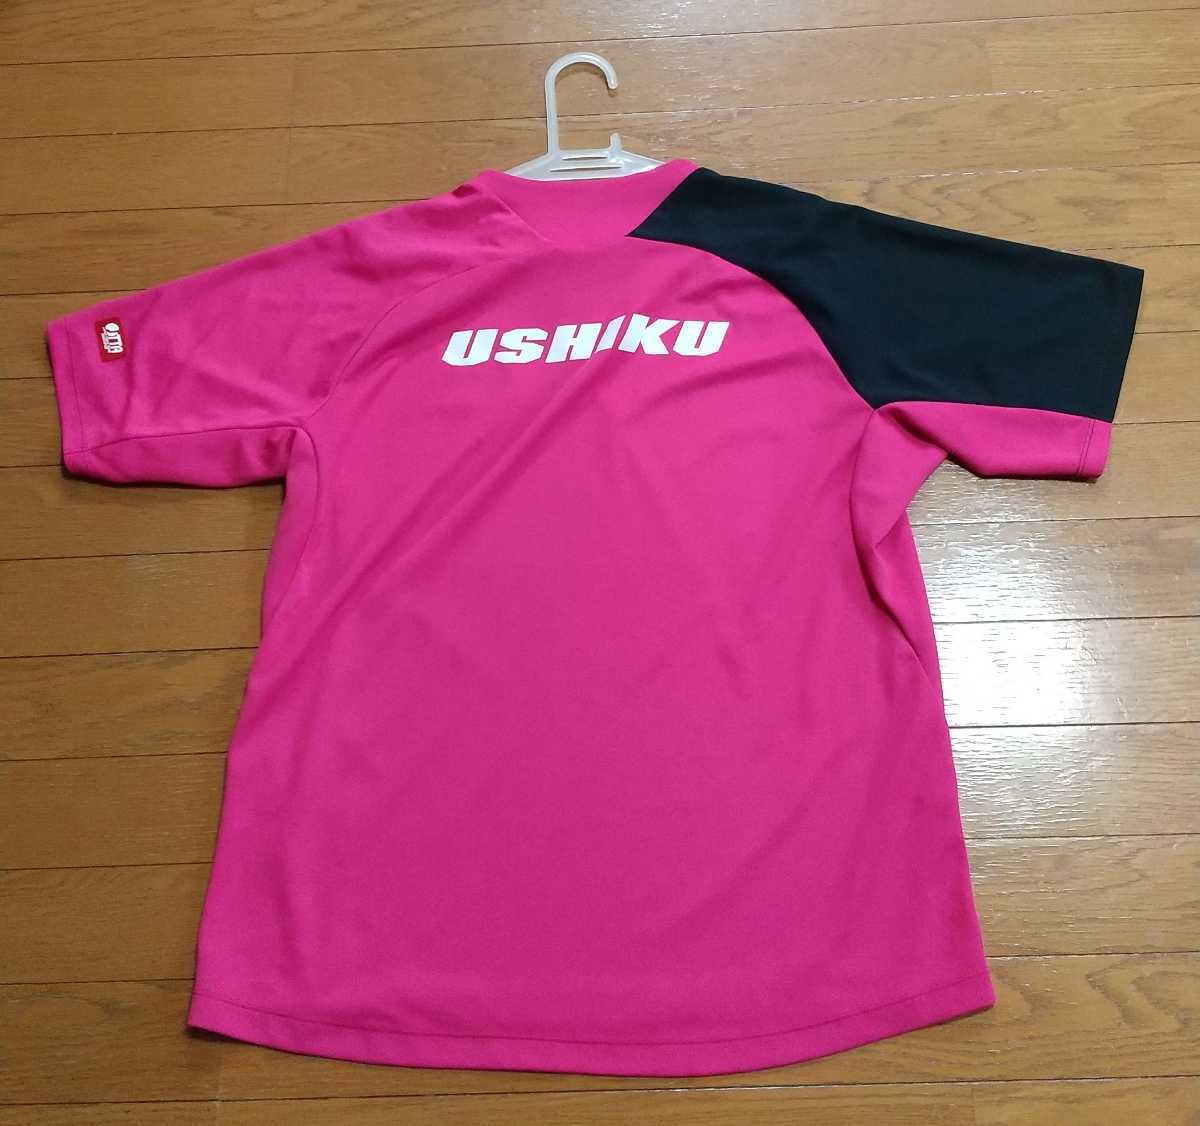  настольный теннис Mizuno рубашка розовый XL